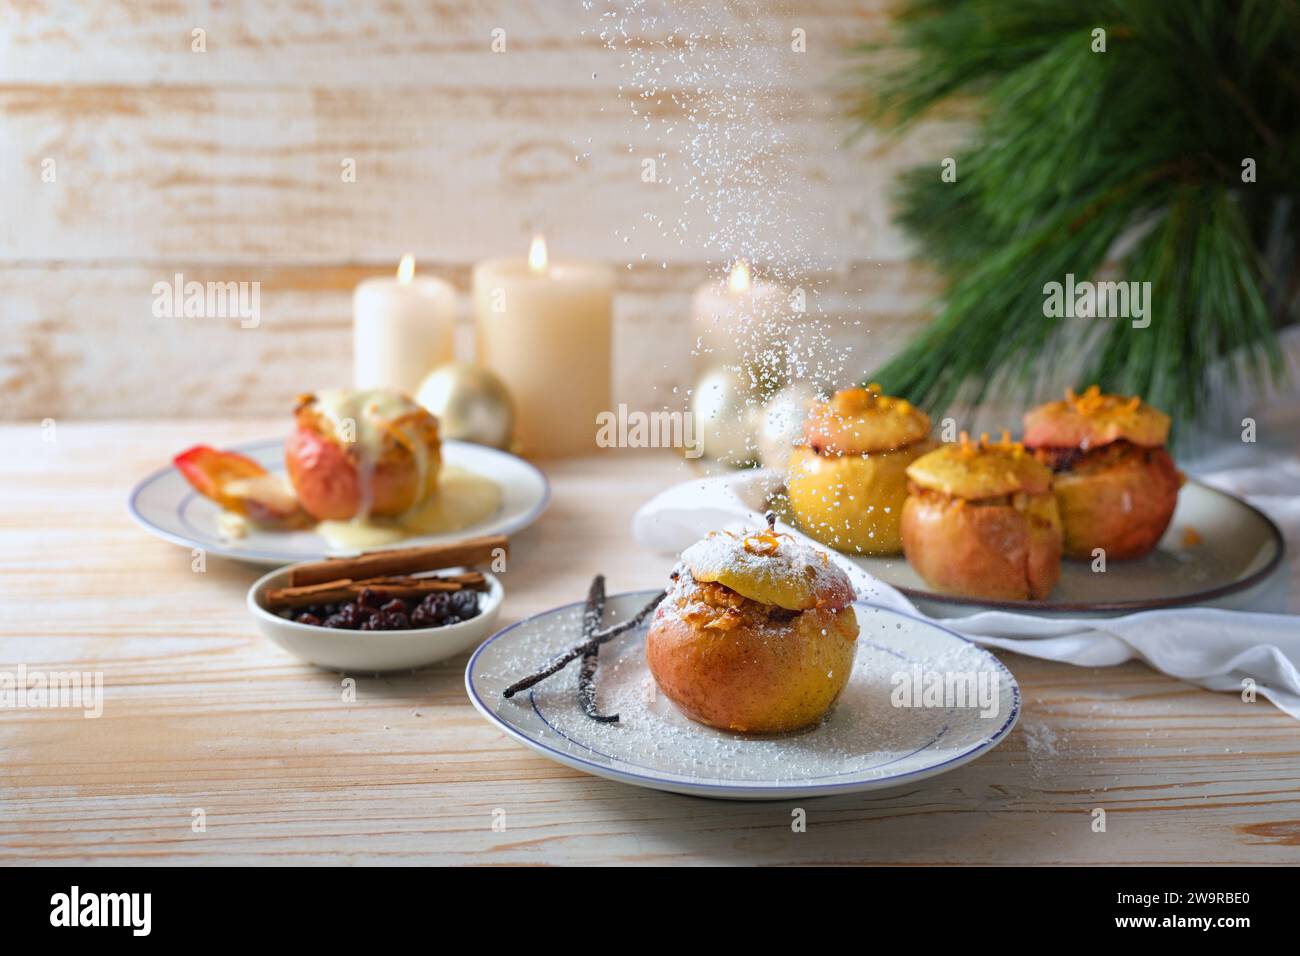 Puderzucker wird auf einen gebackenen Apfel gestreut, der mit Mandeln, Marzipan und Honig gefüllt ist, mit Vanille, Zimt und Orangenschale gewürzt, festlich Stockfoto